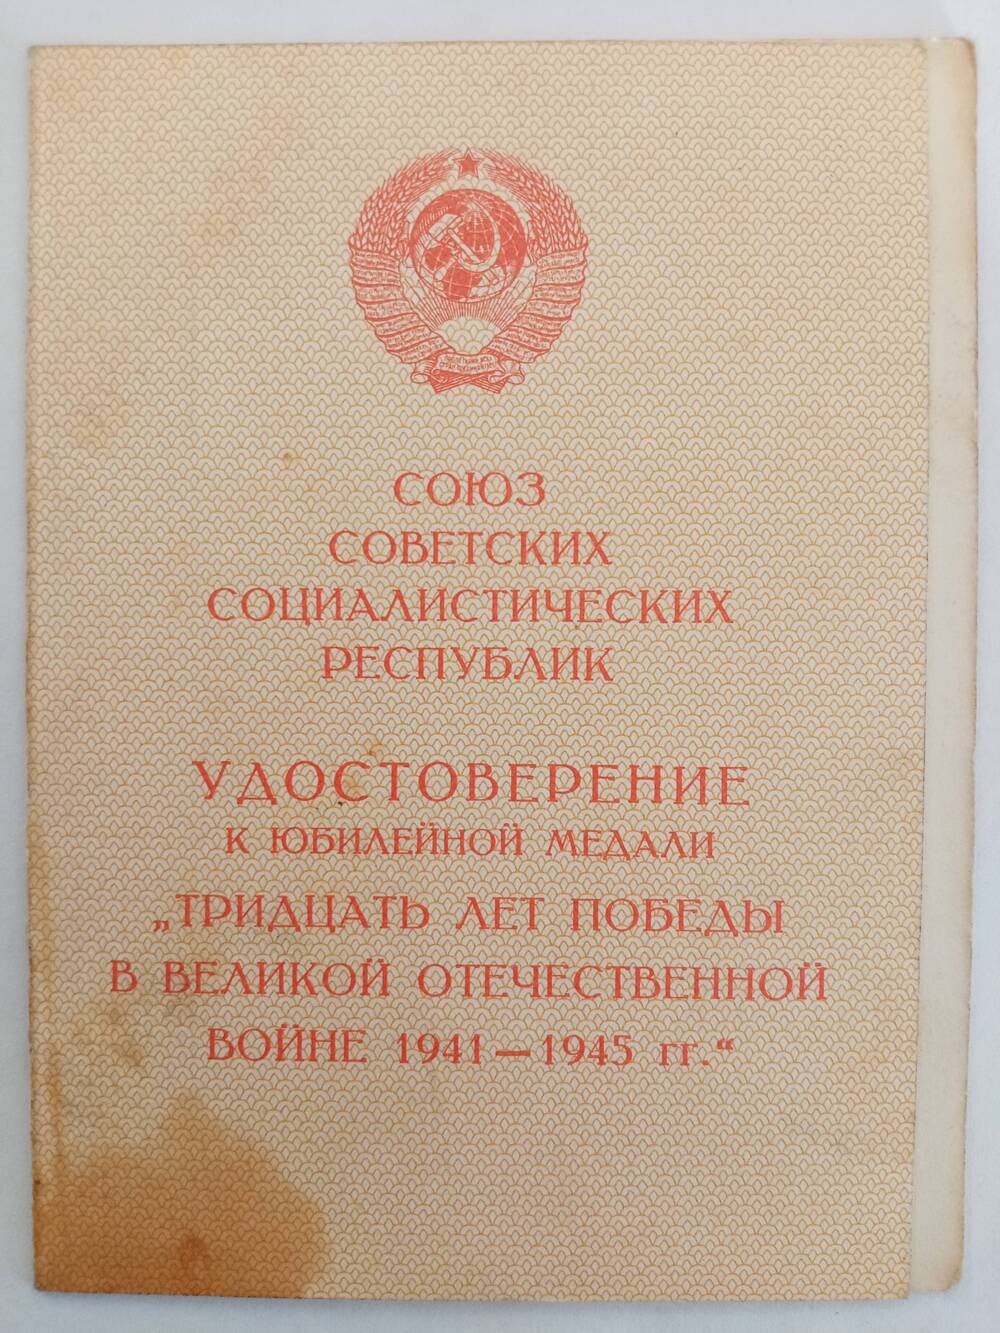 Удостоверение к юбилейной медали 30 лет Победы в Великой Отечественной Войне 1941-1945 г.